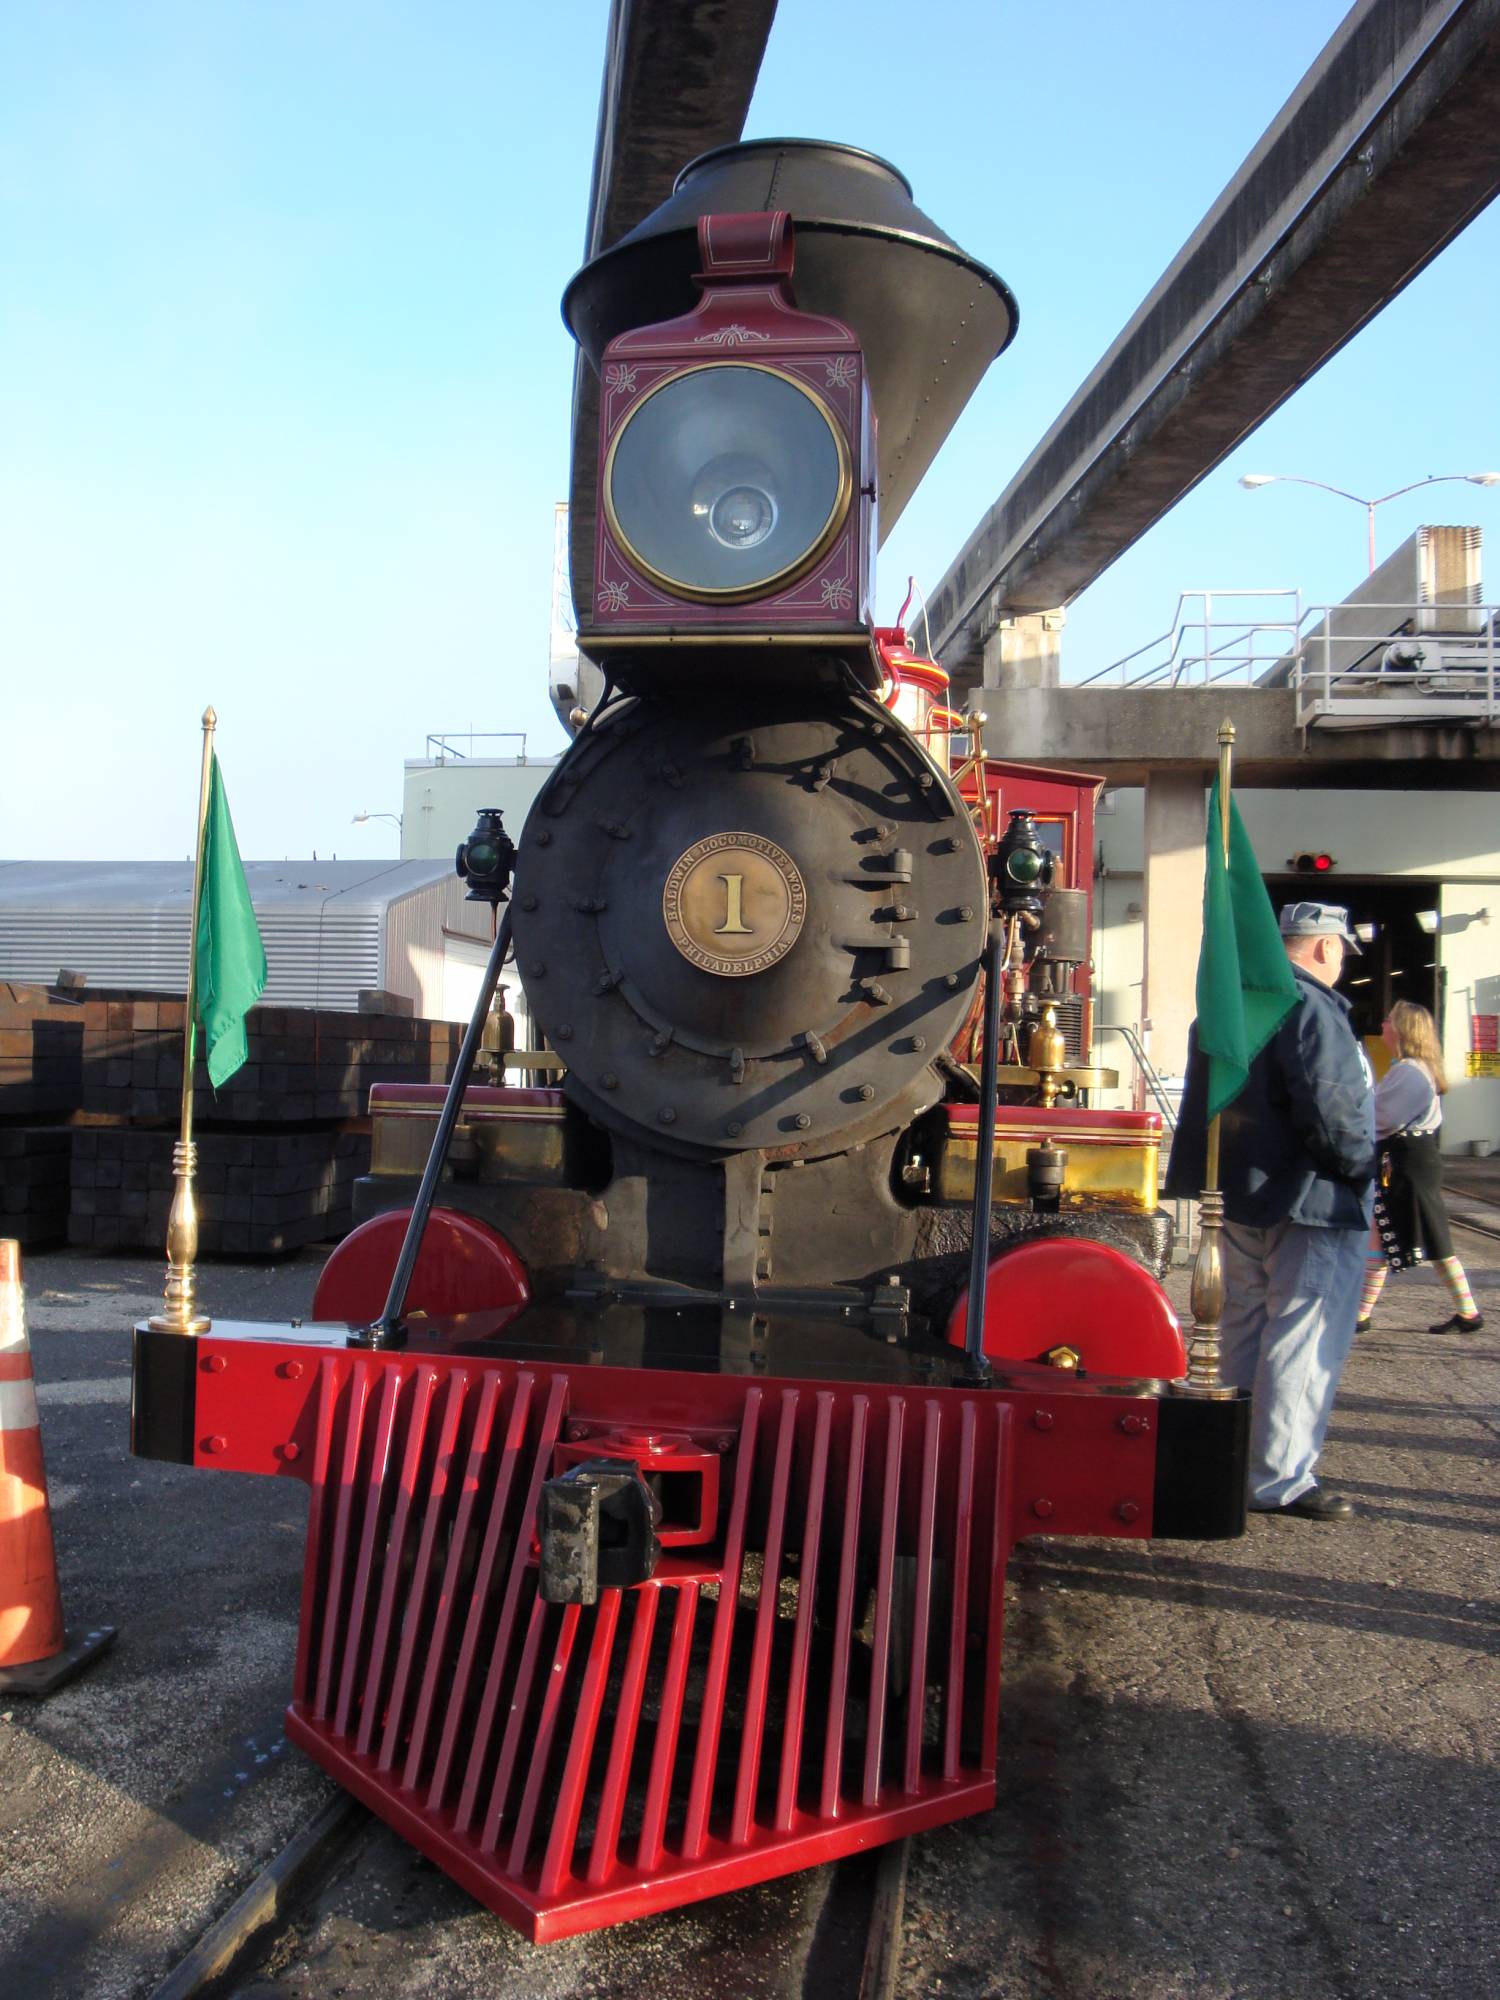 Steam train tour